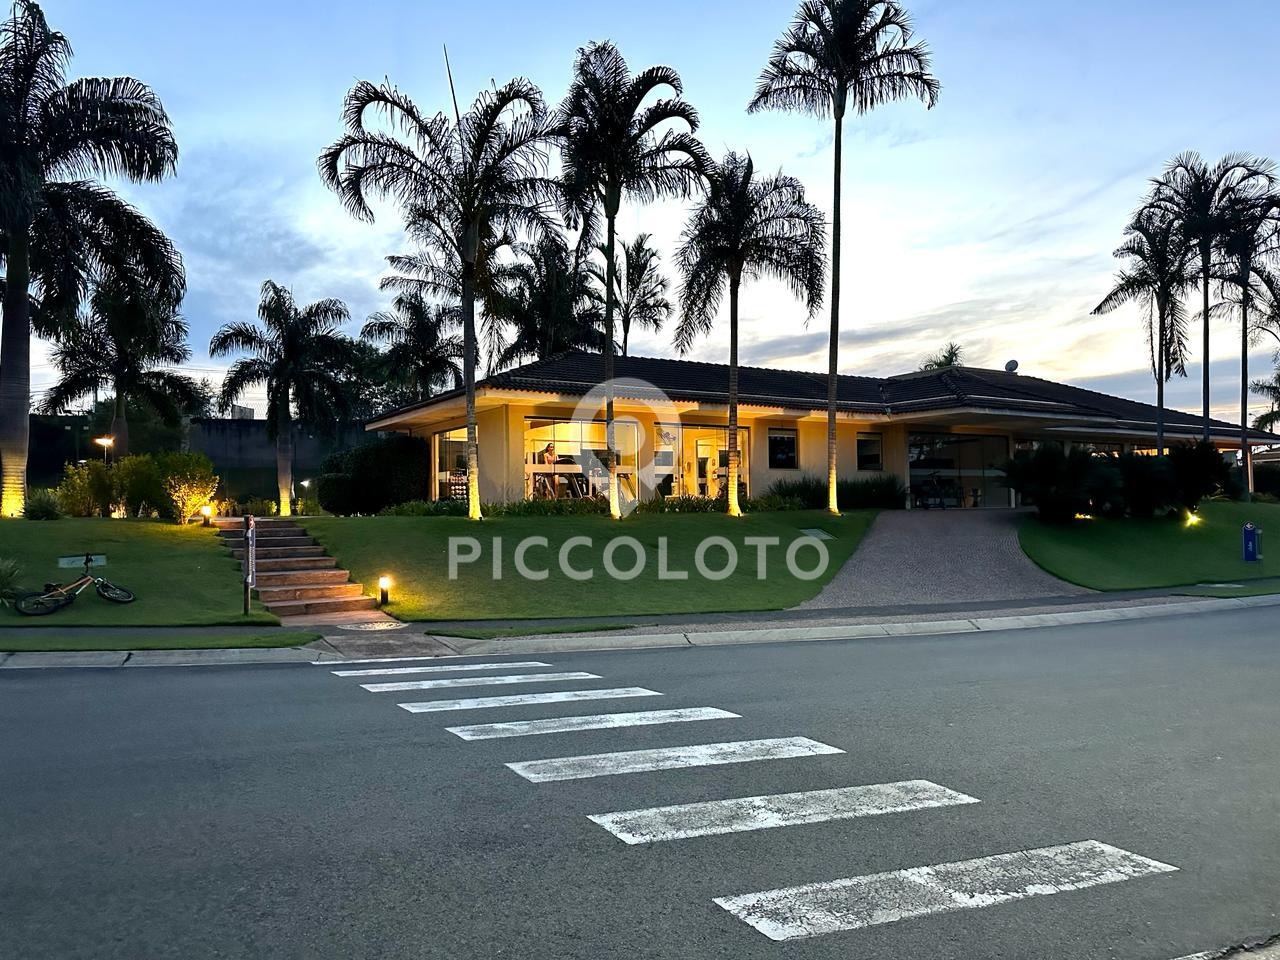 Piccoloto -Casa à venda no Alphaville em Campinas